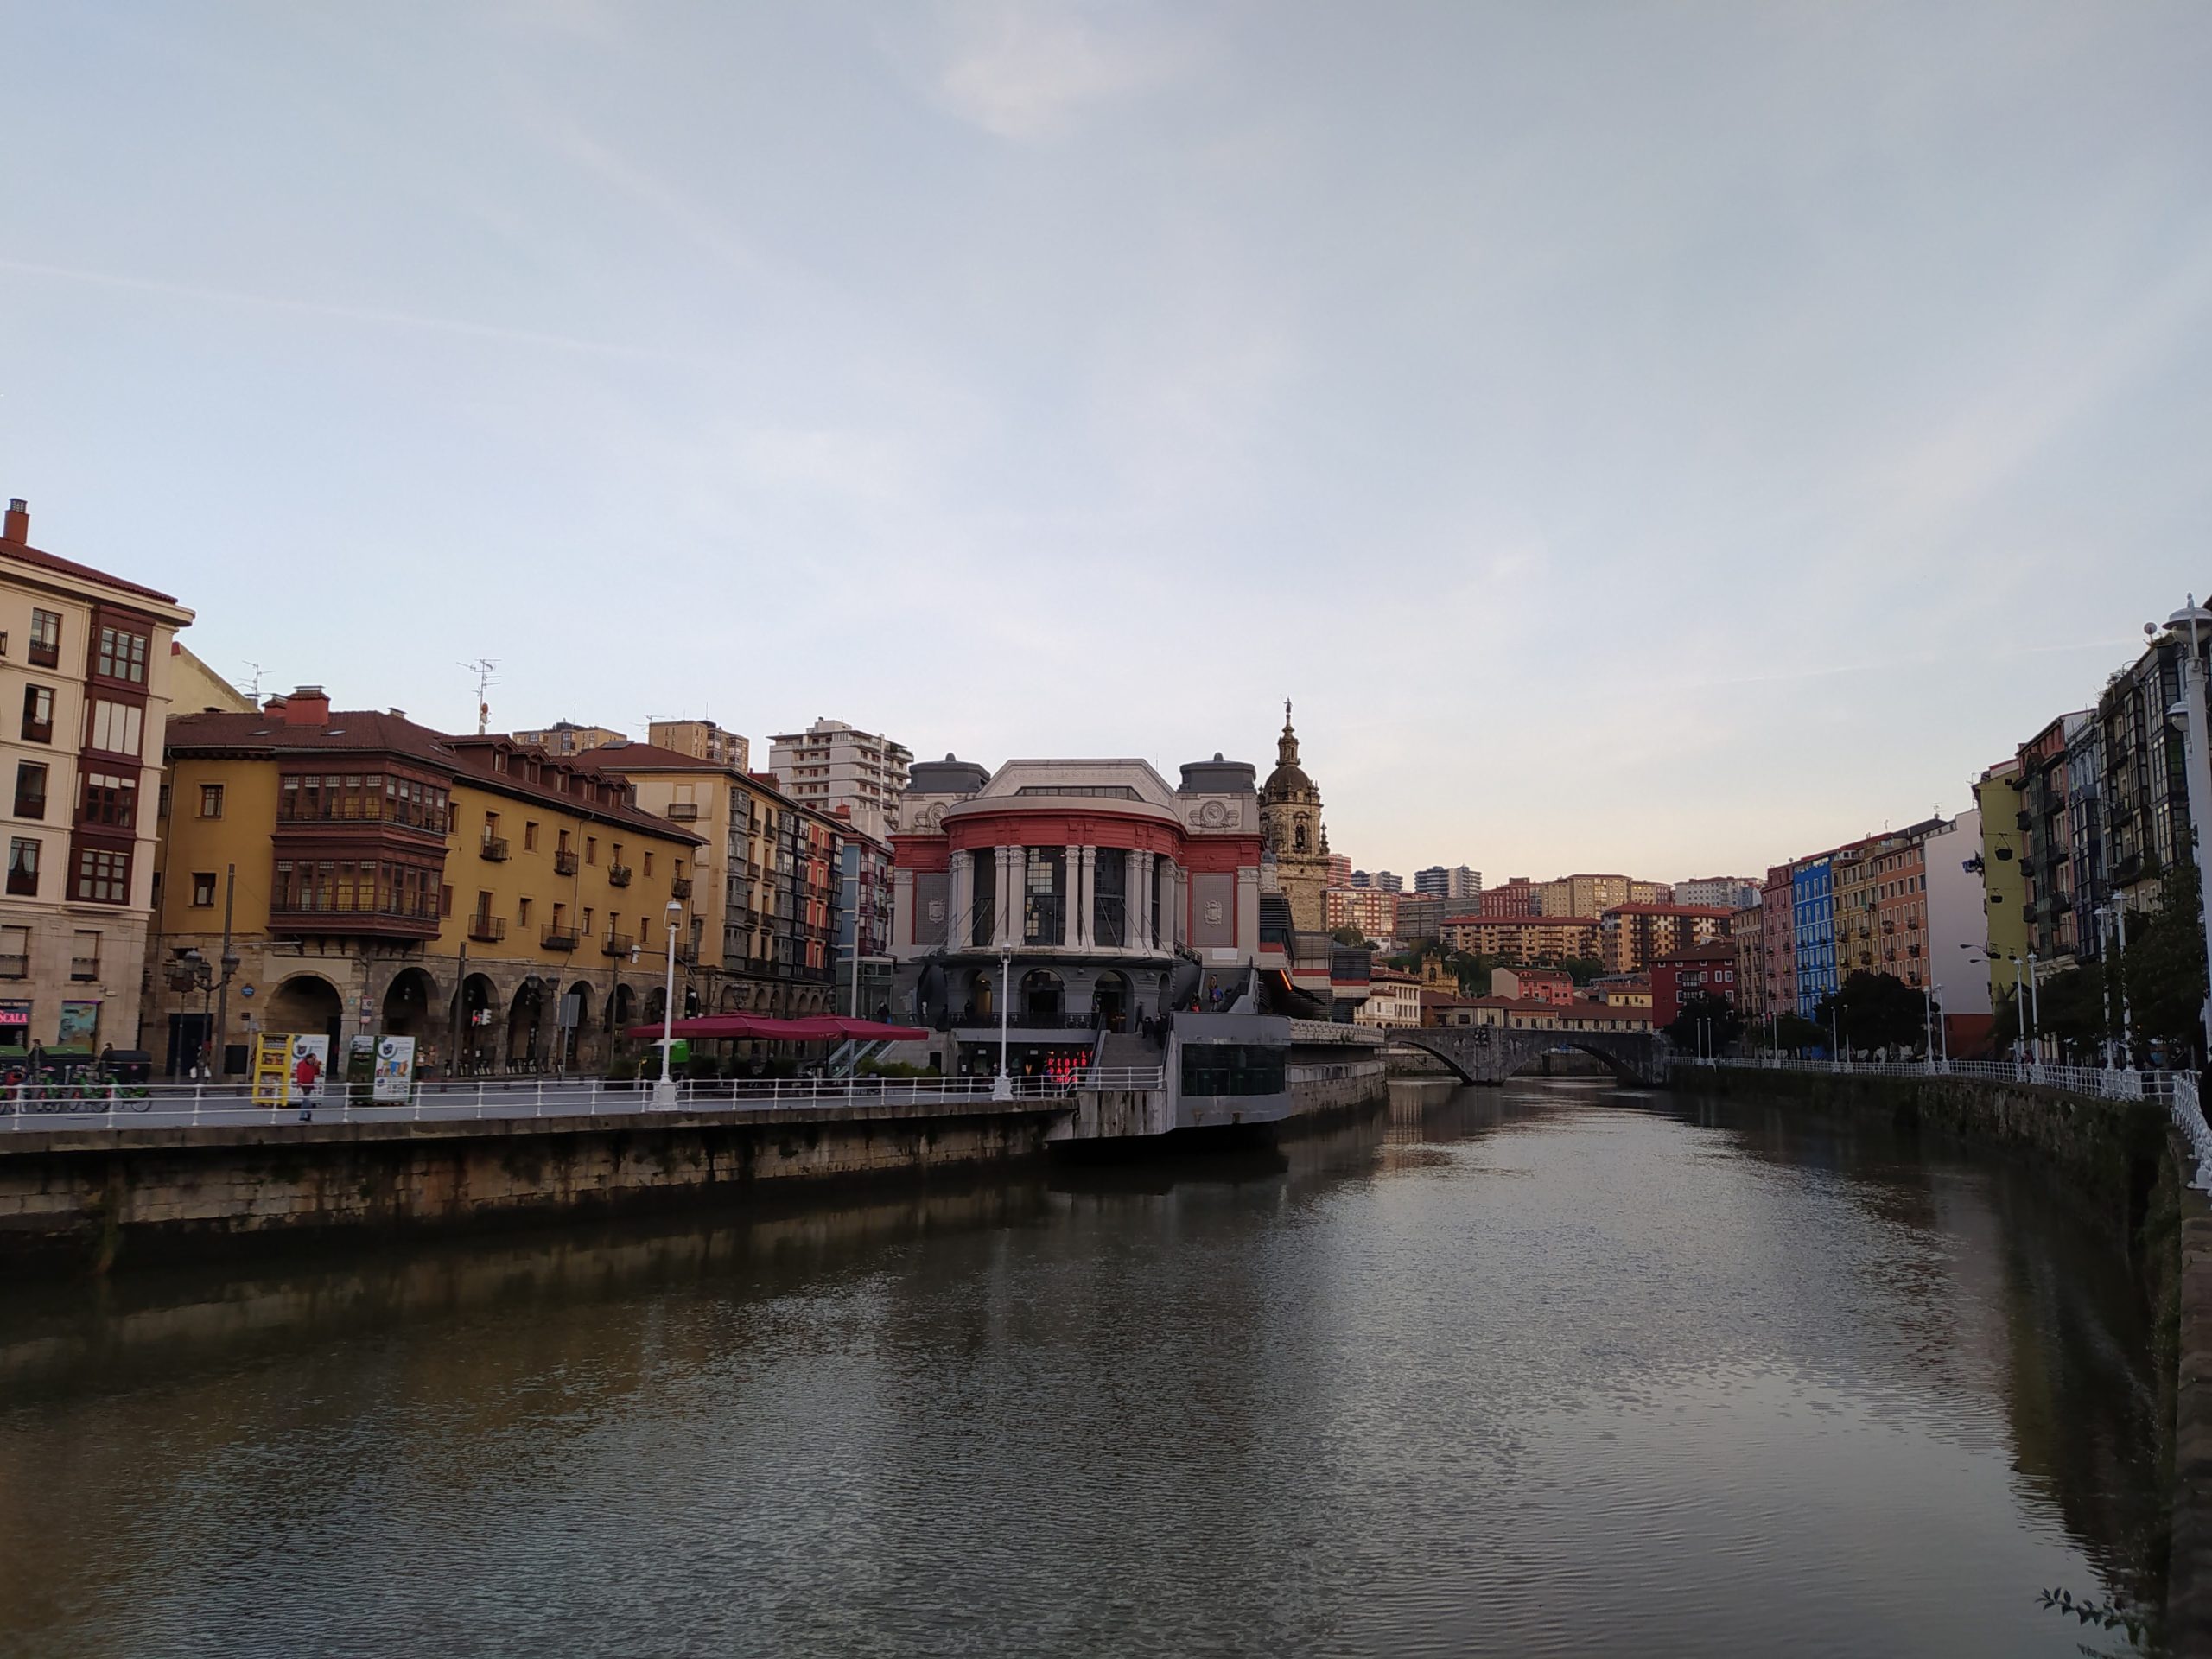 Mercado de la ribera, qué ver en Bilbao